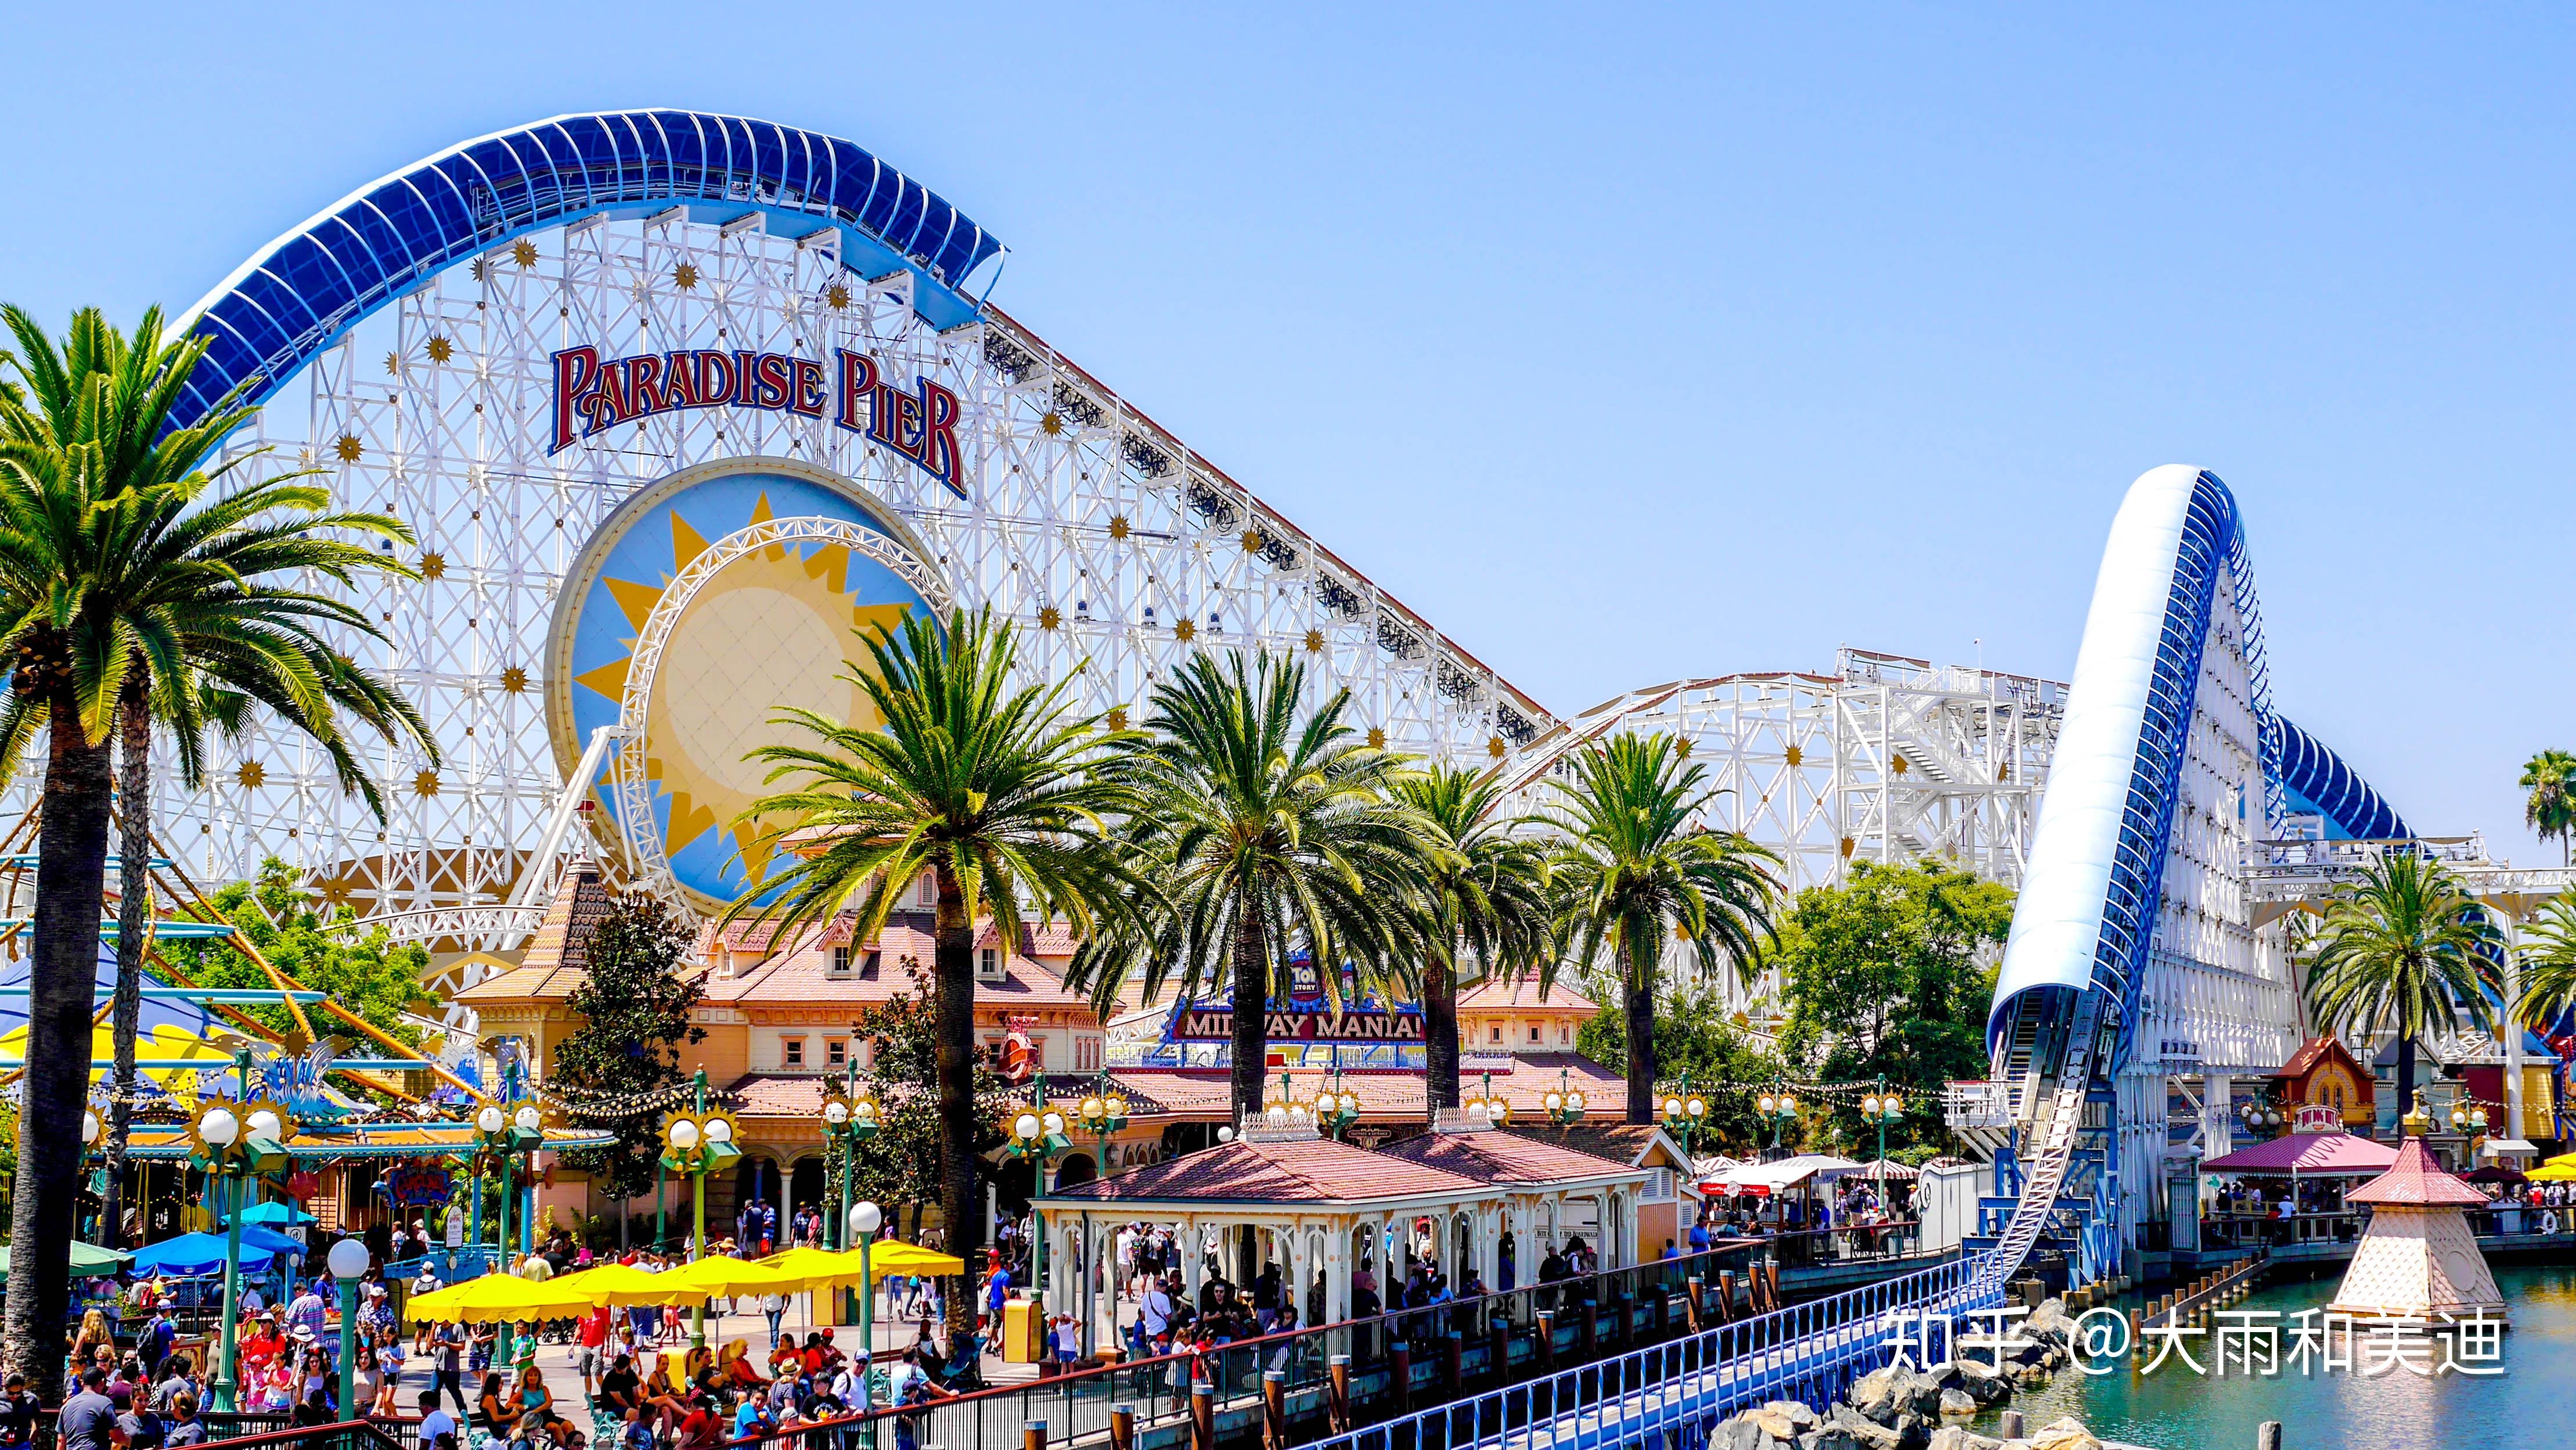 一个是迪士尼乐园,一个是加州冒险乐园